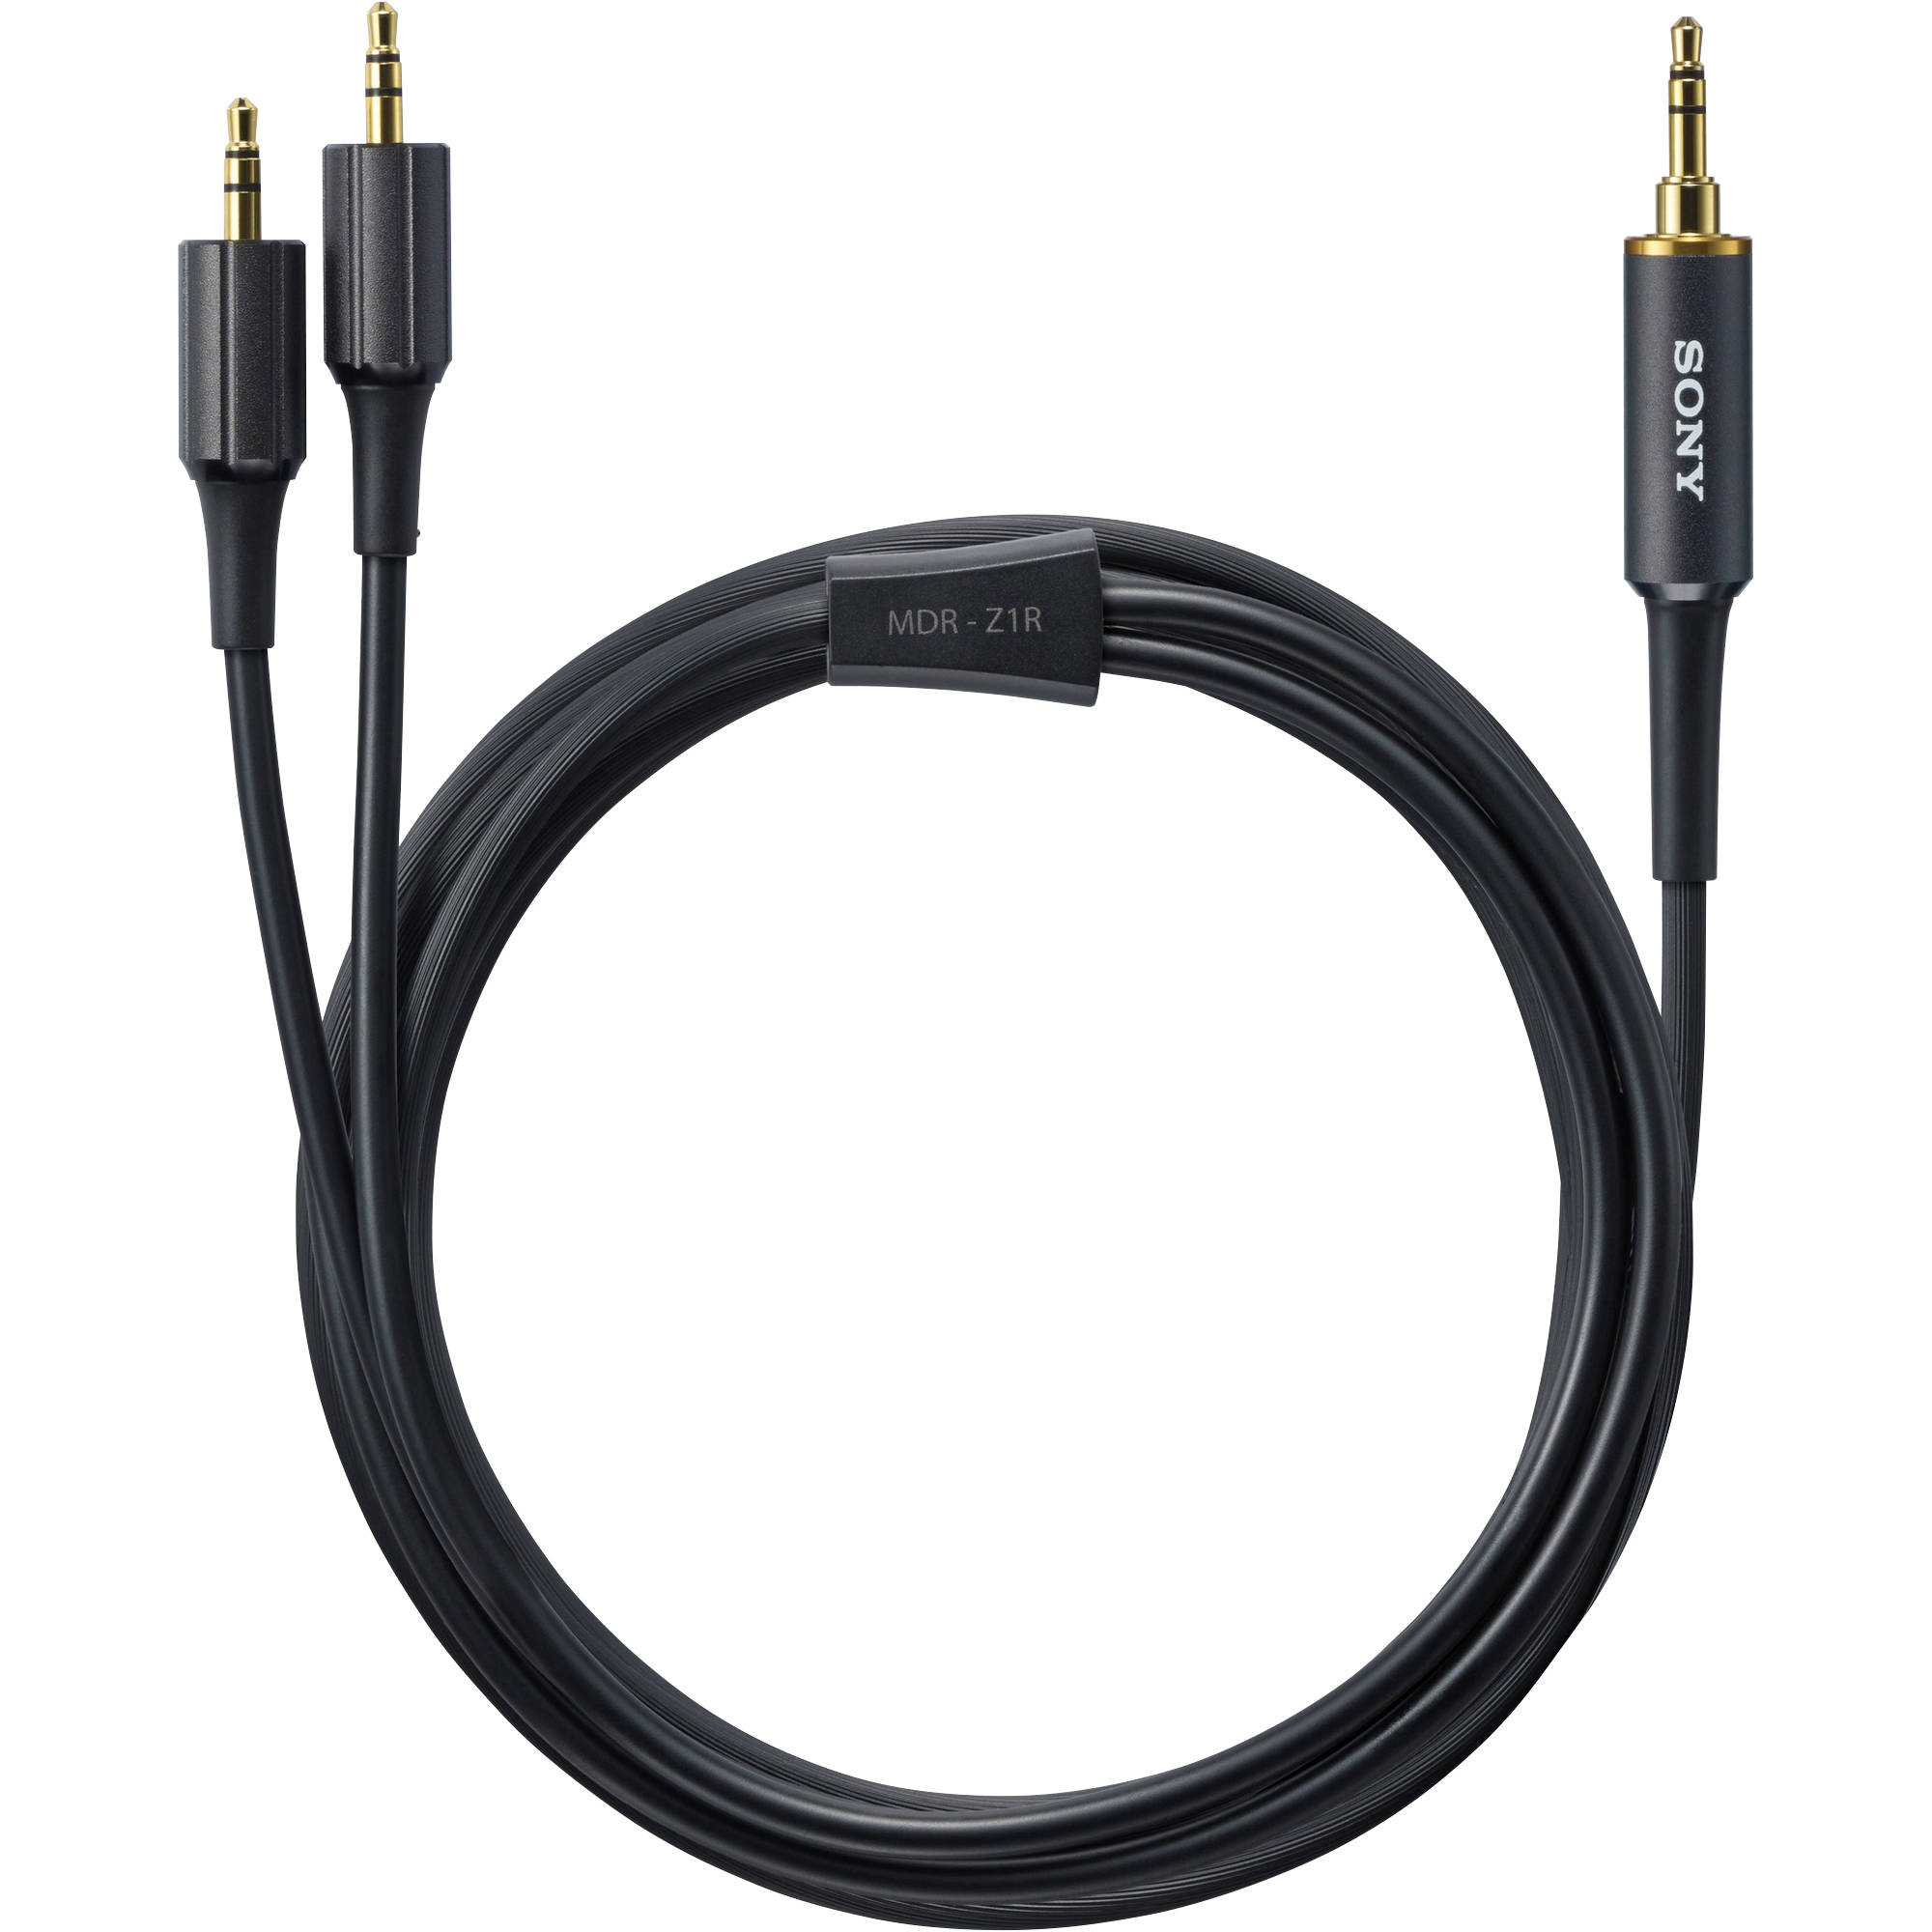 Sony MDR-Z1R sur les écouteurs oreilles - pleine grandeur - câblé